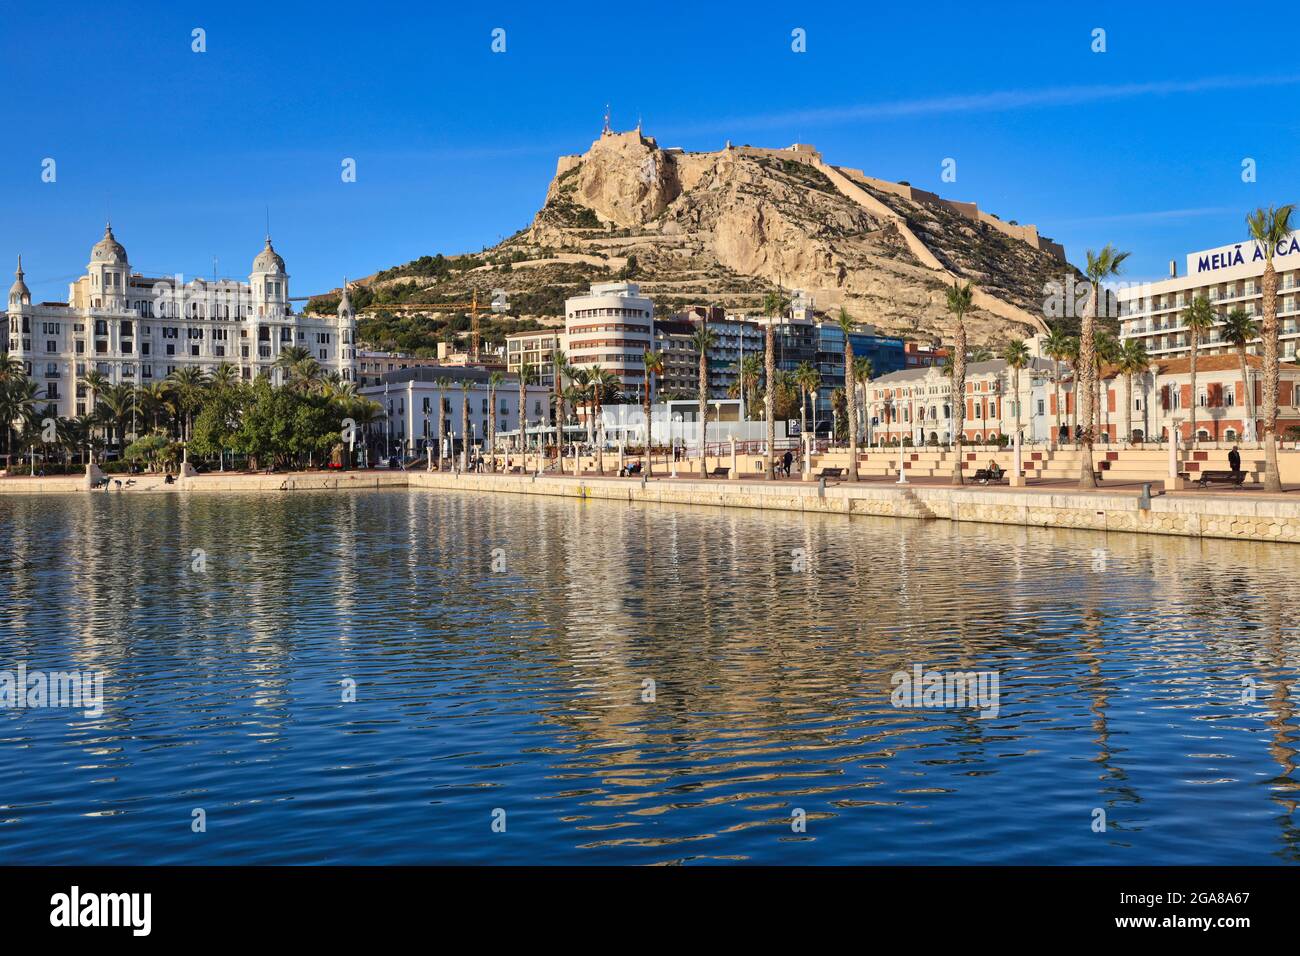 Il castello di Santa Barbara si erge su un promontorio che domina la città di Alicante, in Spagna, con la spianata e il lungomare in primo piano Foto Stock